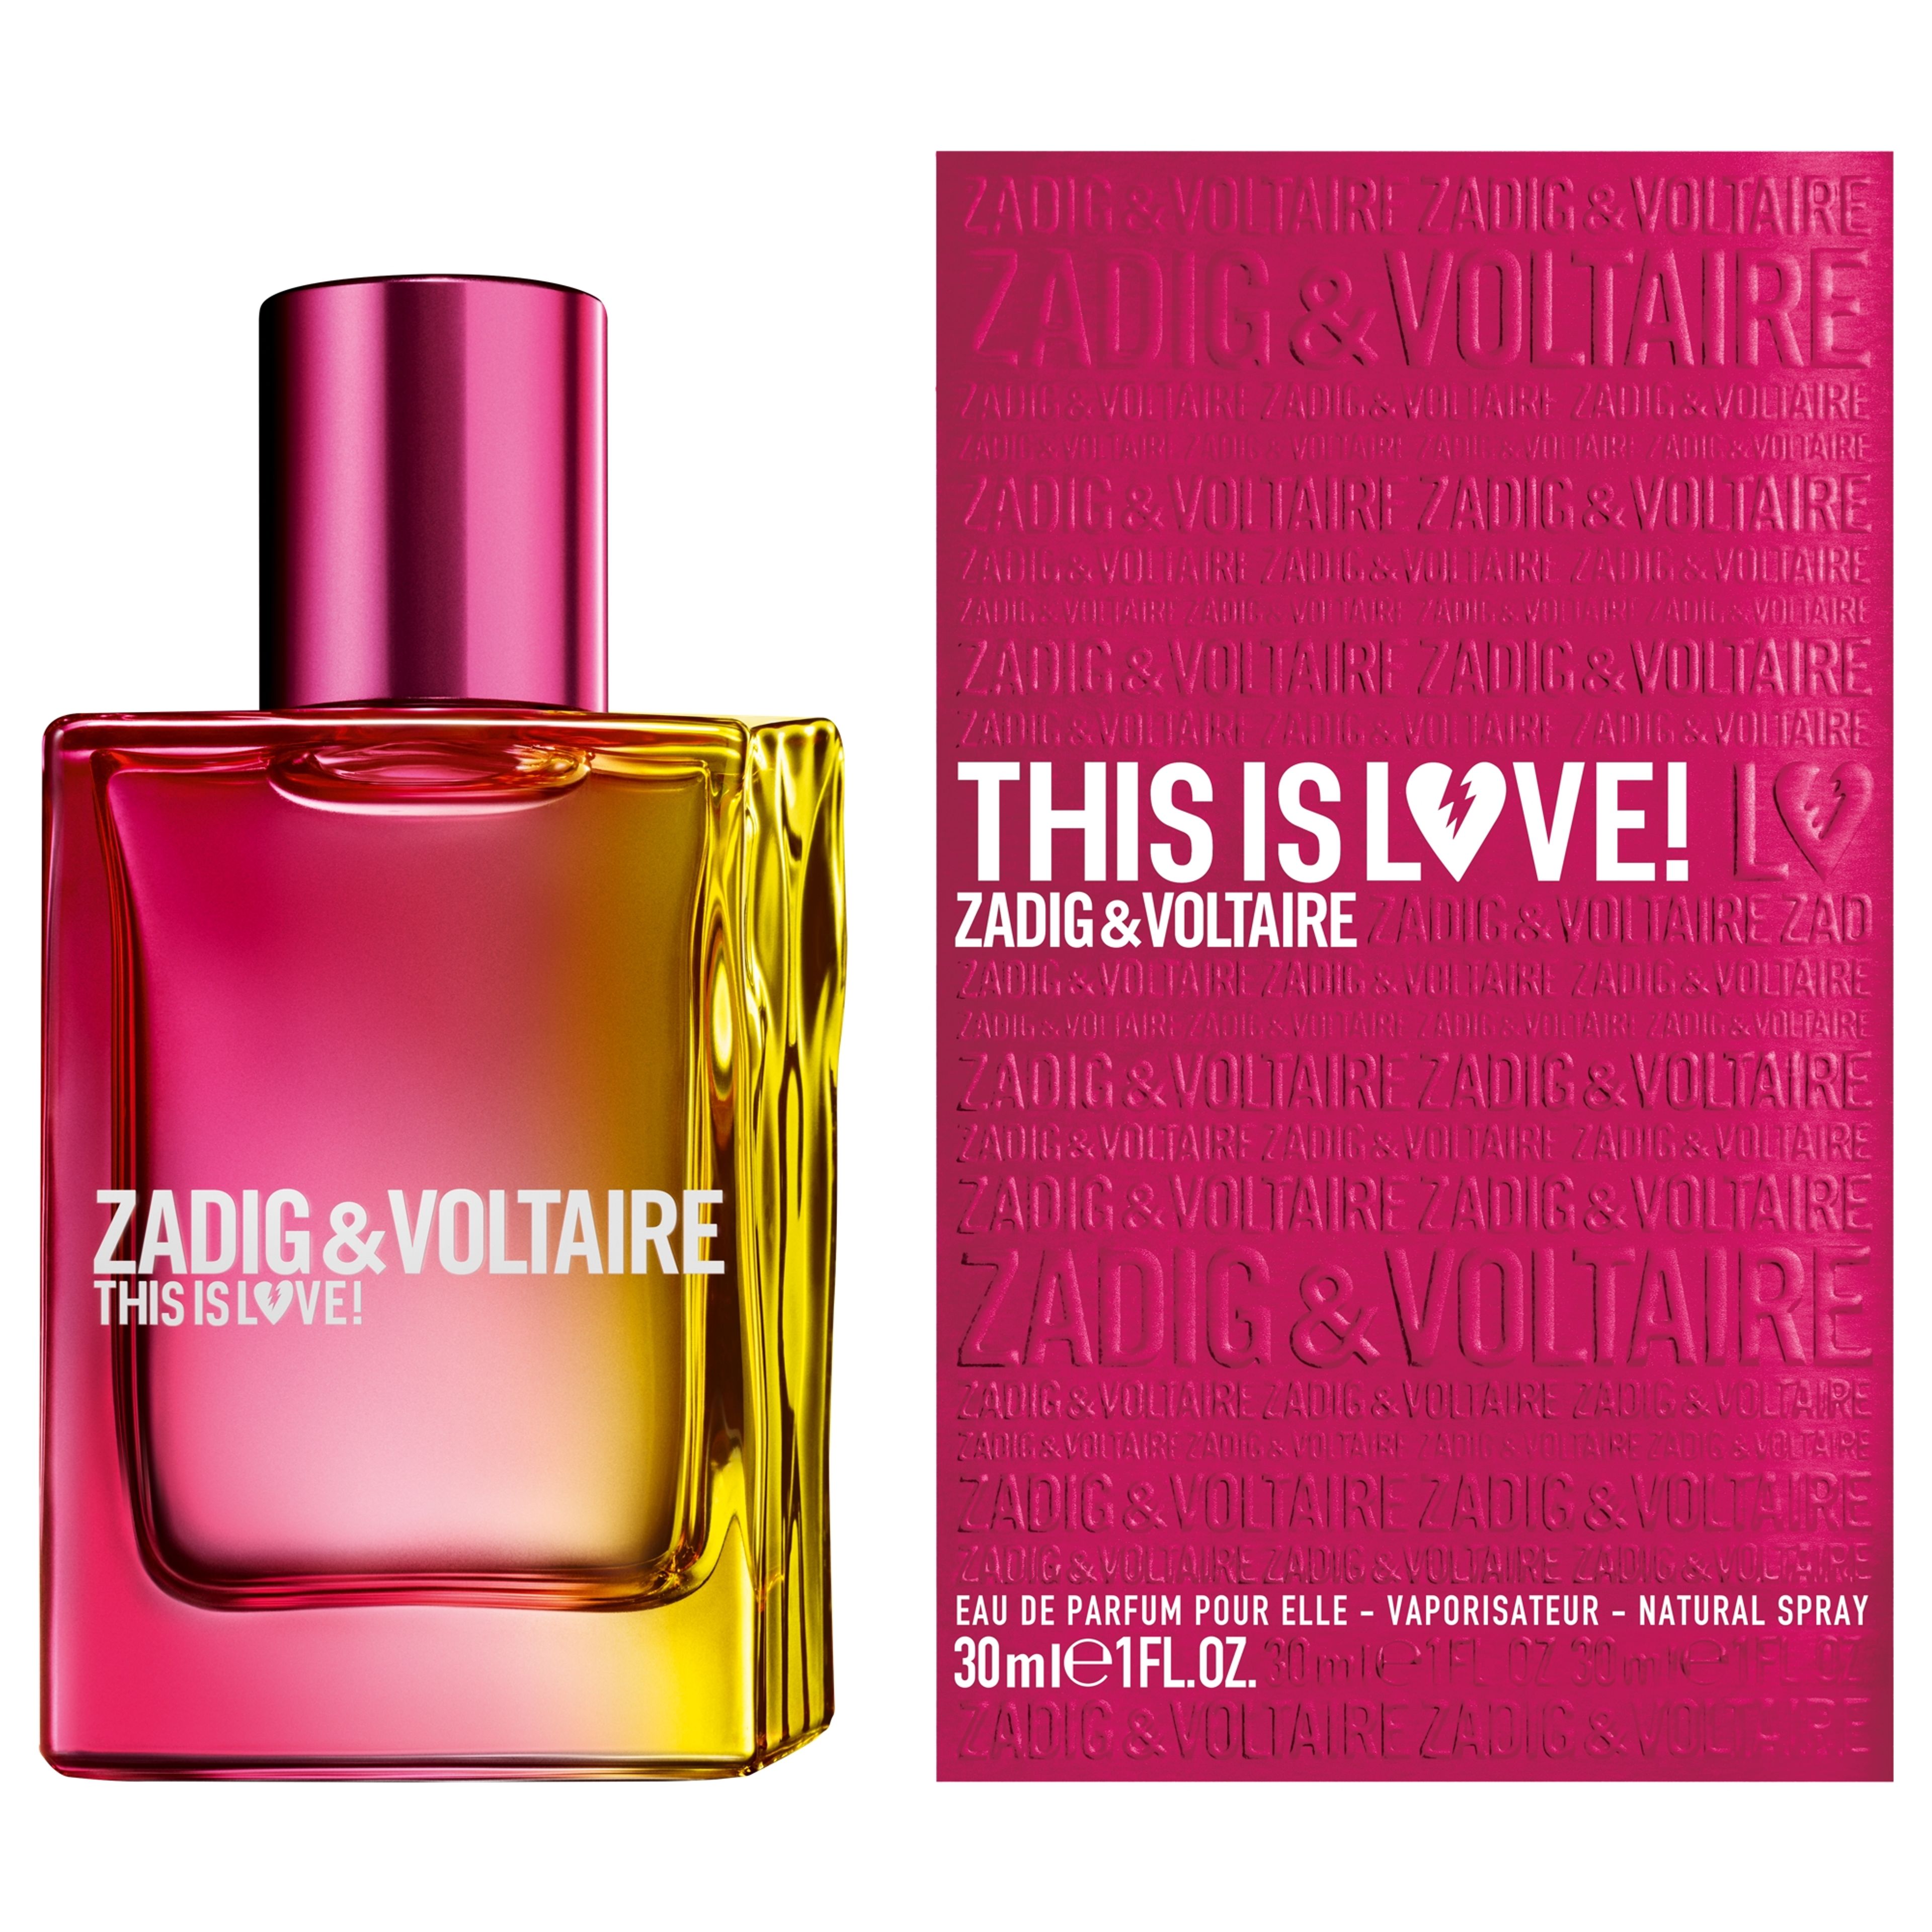 Zadig & Voltaire This Is Love! Pour Elle Eau De Parfum 2